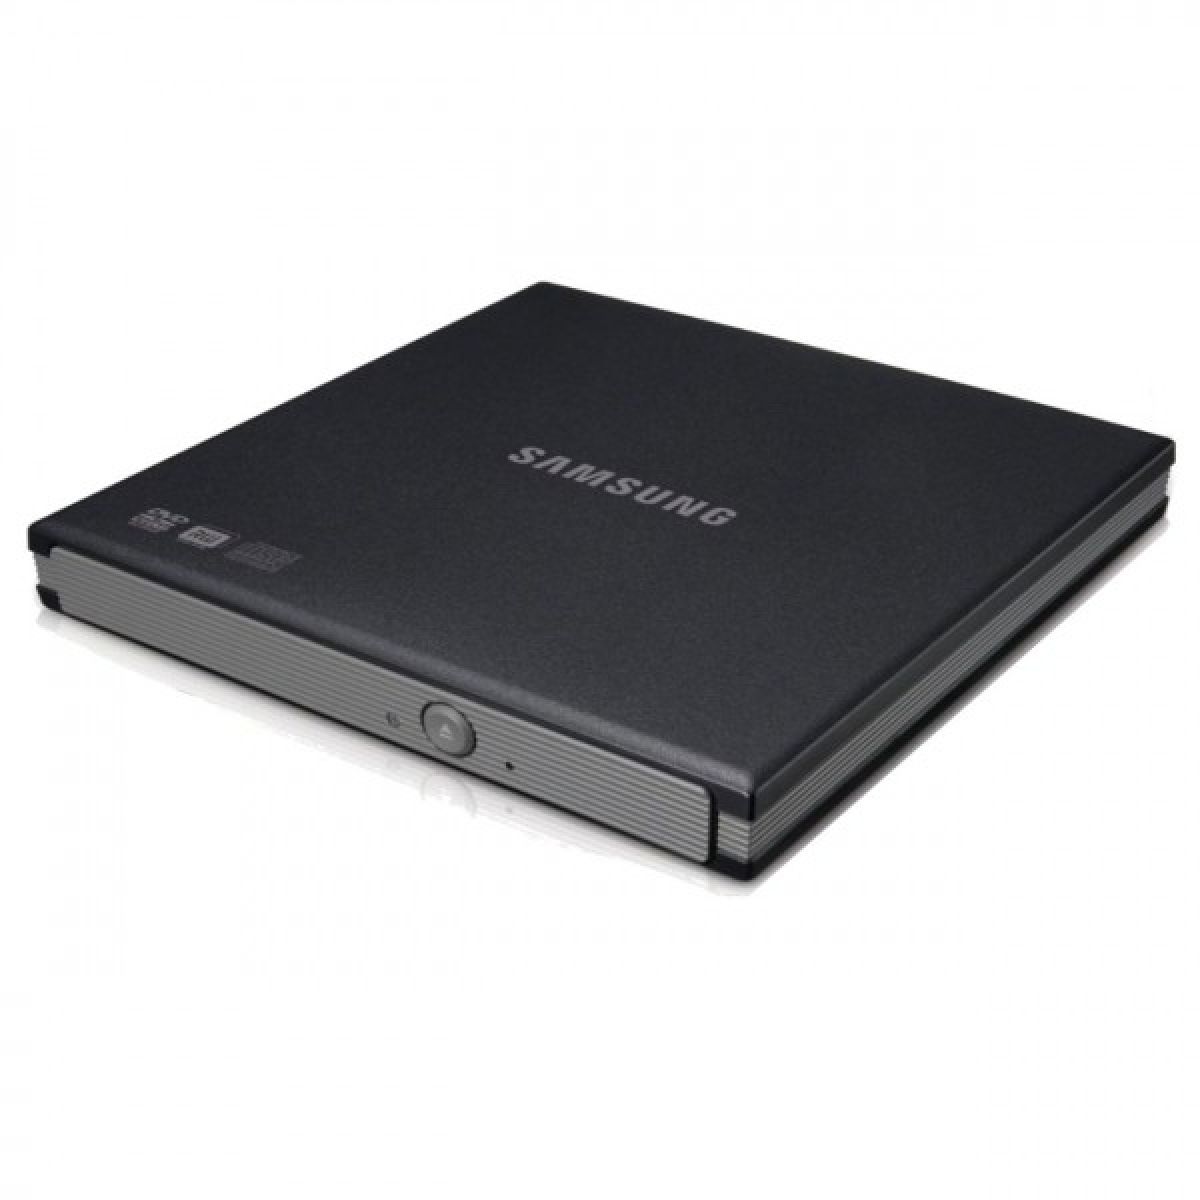 Samsung SE-S084 Graveur DVD externe USB 2.0 Noir